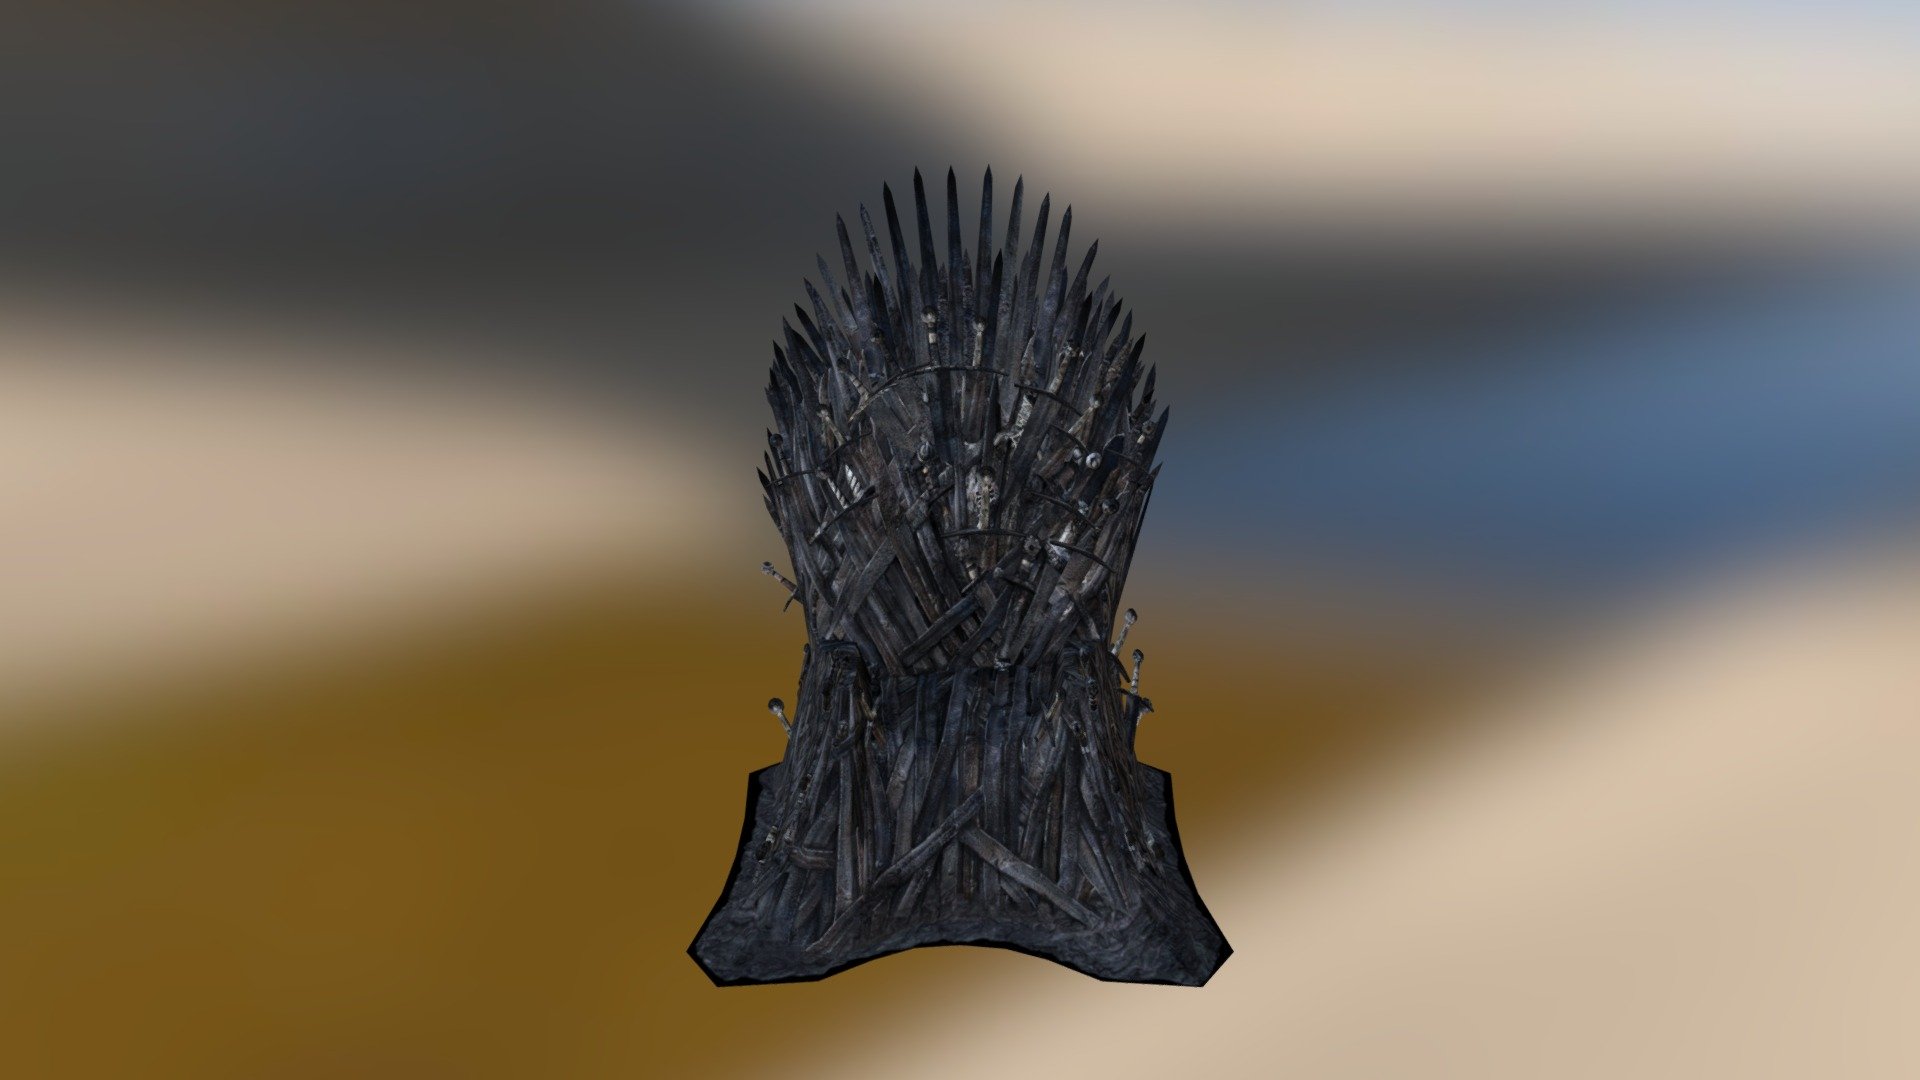 Iron Throne